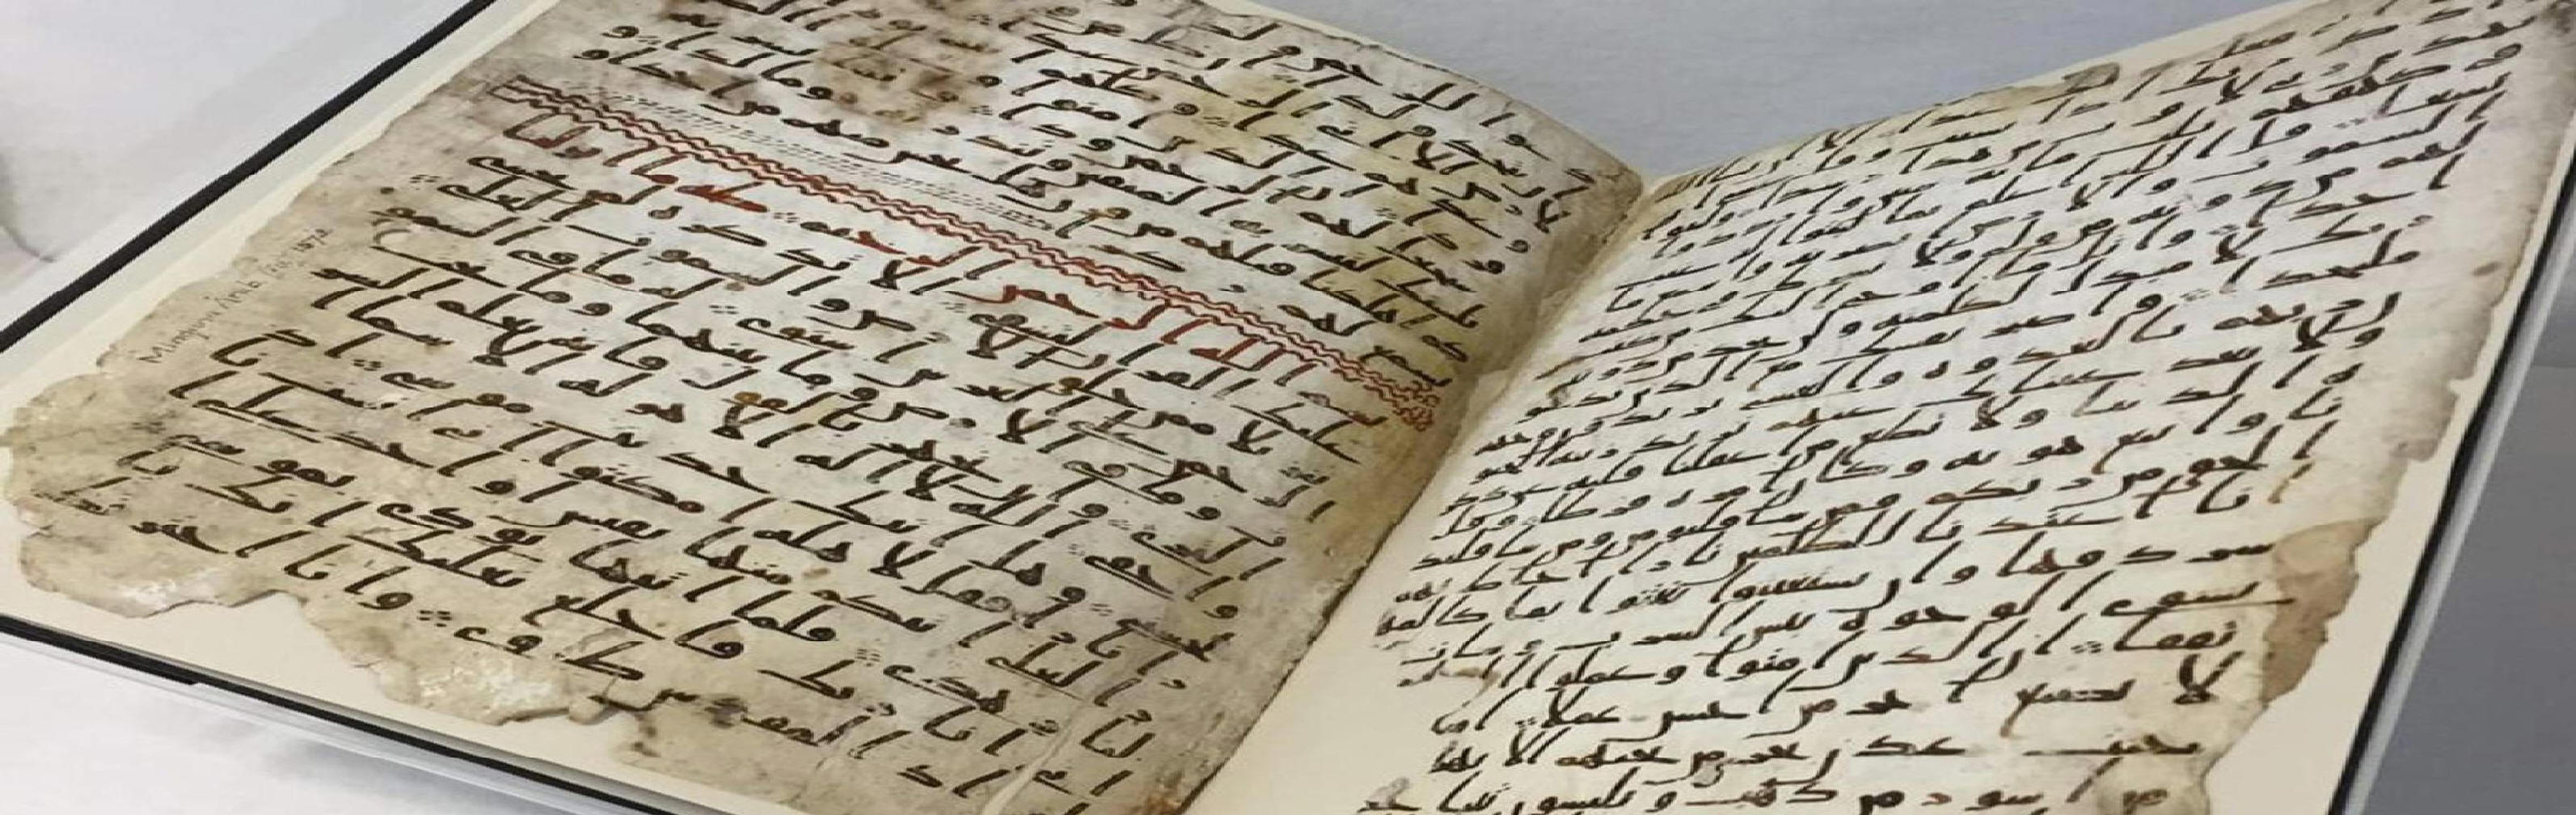 Found oldest quran 'Oldest Quran'